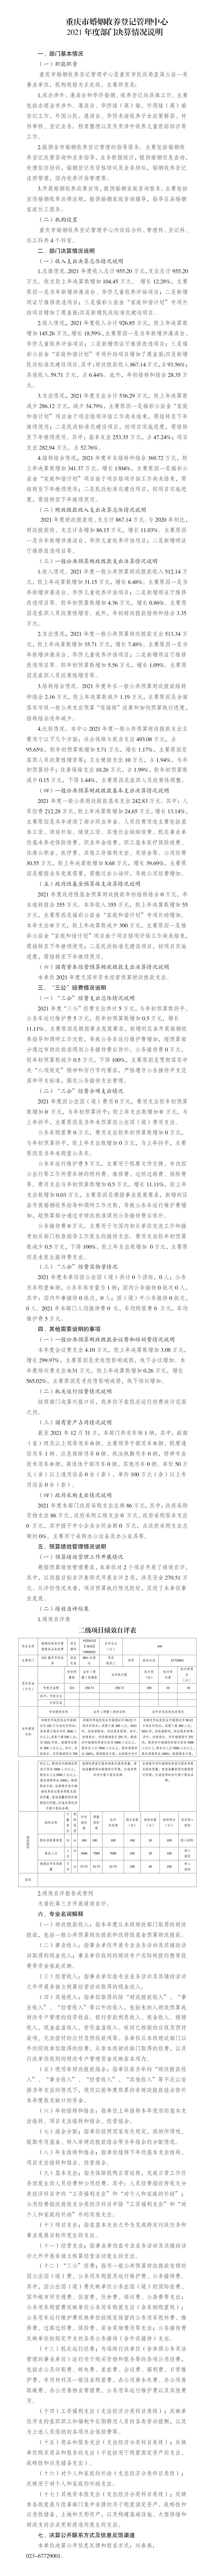 2021重庆市婚姻收养登记管理中心决算公开情况说明(修改)_01.jpg